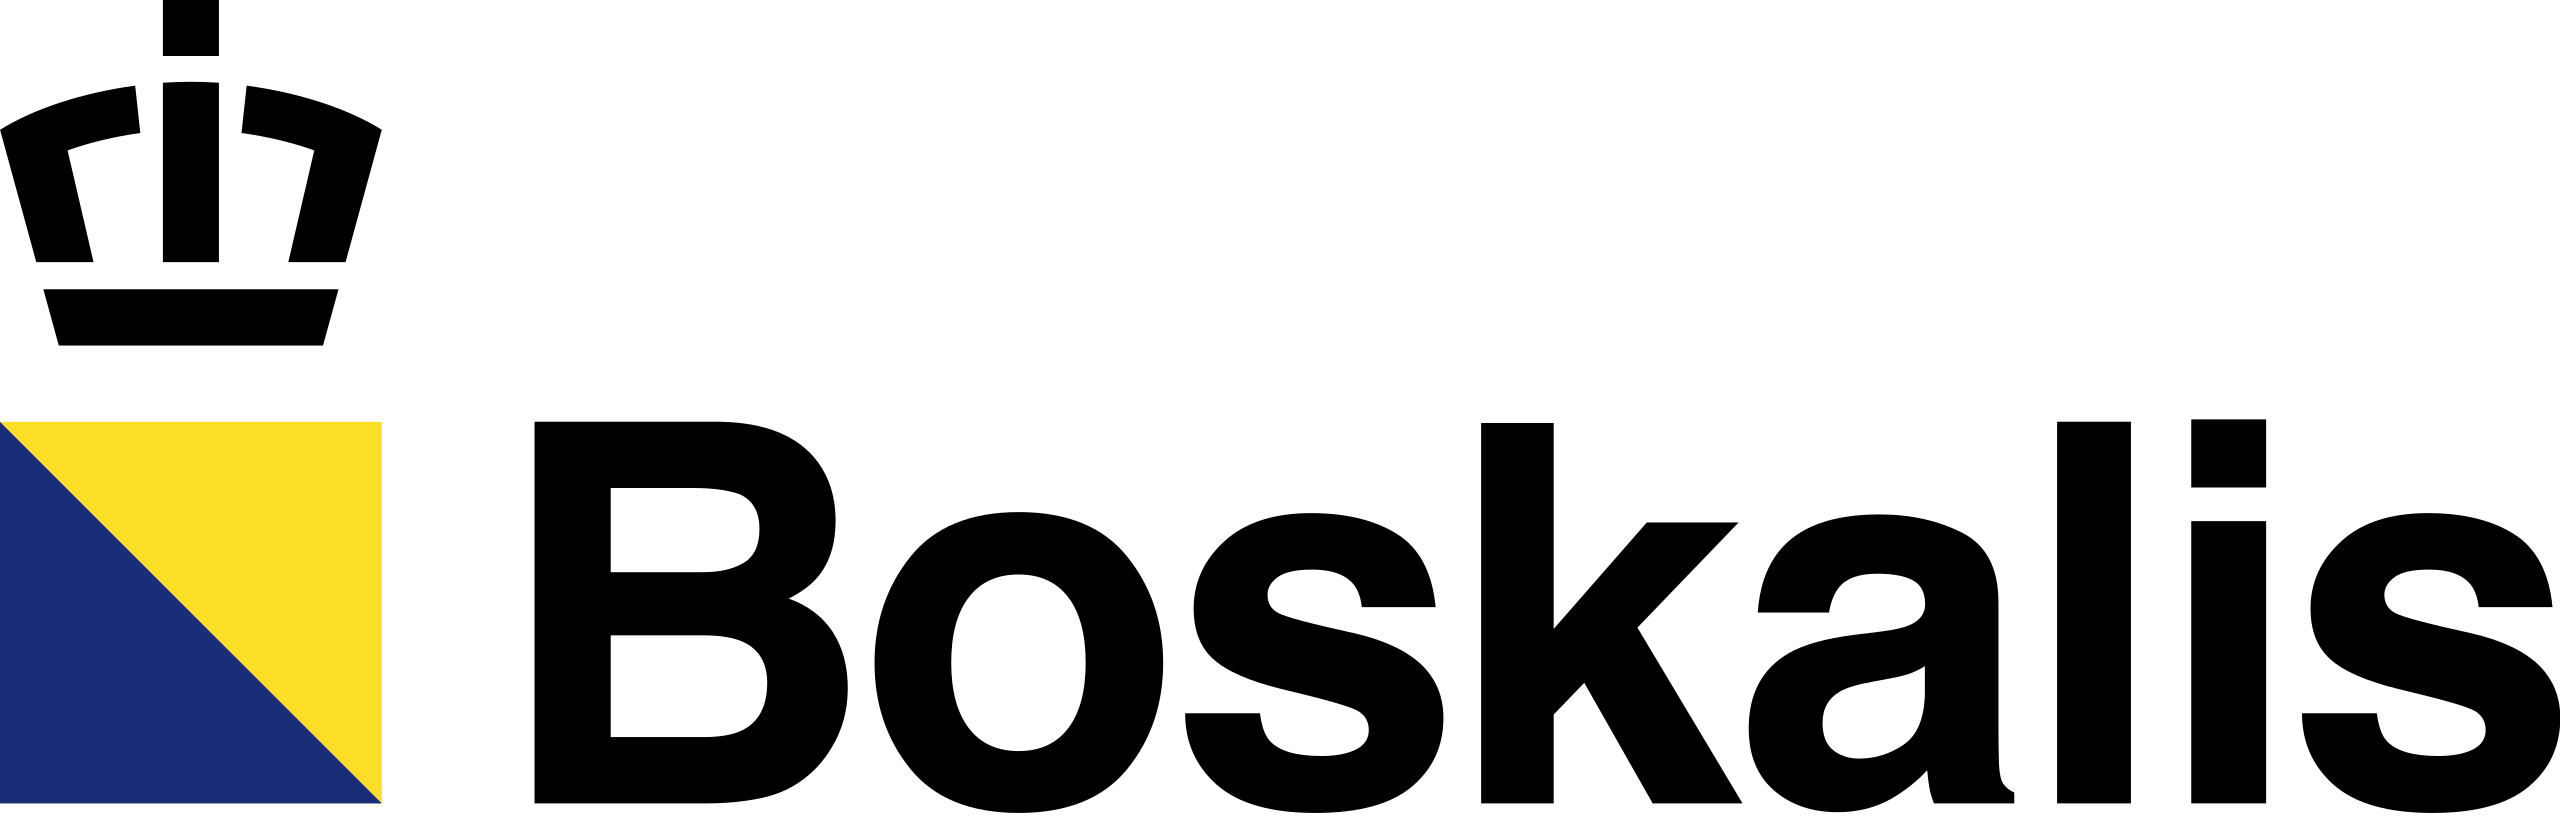 Boskalis_logo.svg